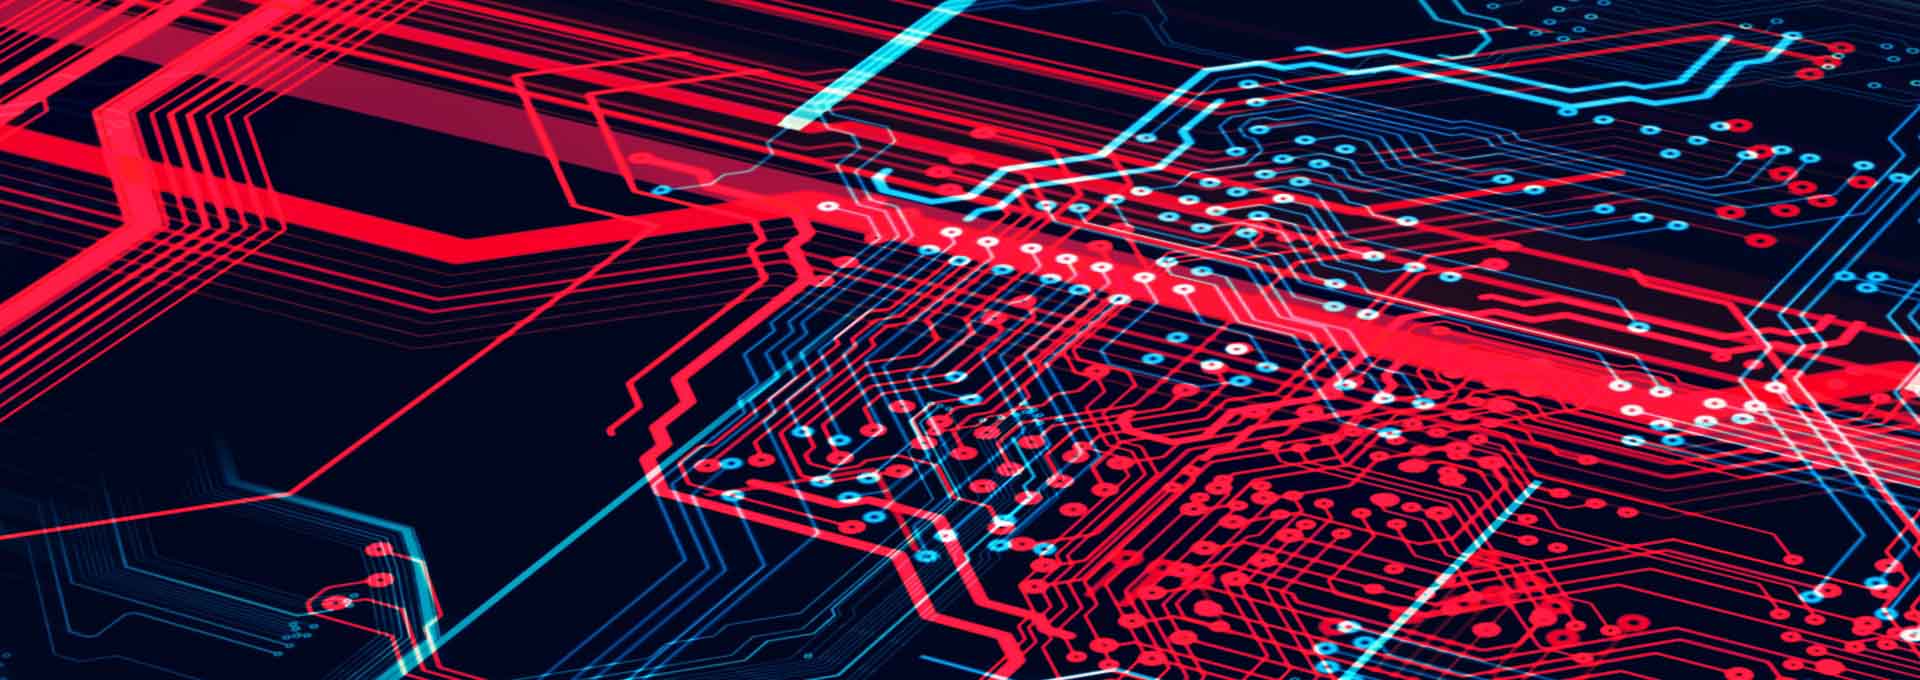 Fond technologique bleu foncé et rouge avec une carte de circuit imprimé, un code, une ligne rouge et bleue forte. Une illustration en 3D.